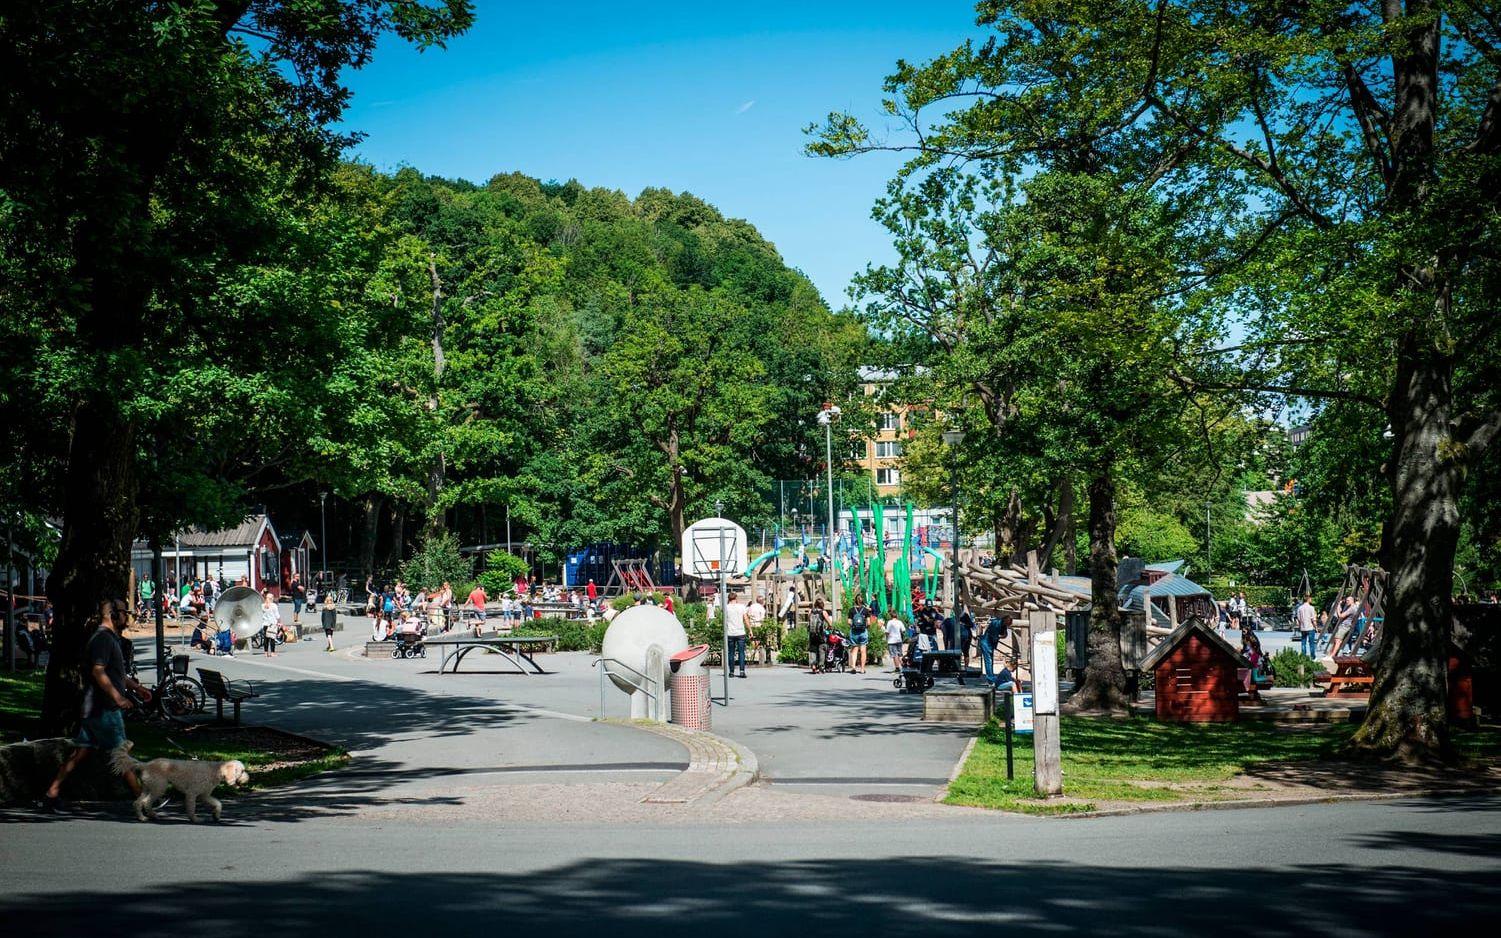 Plikta som var stadens första bemannade lekplats är den del av parken som utvecklats mest de senaste åren. Bild: Olof Ohlsson